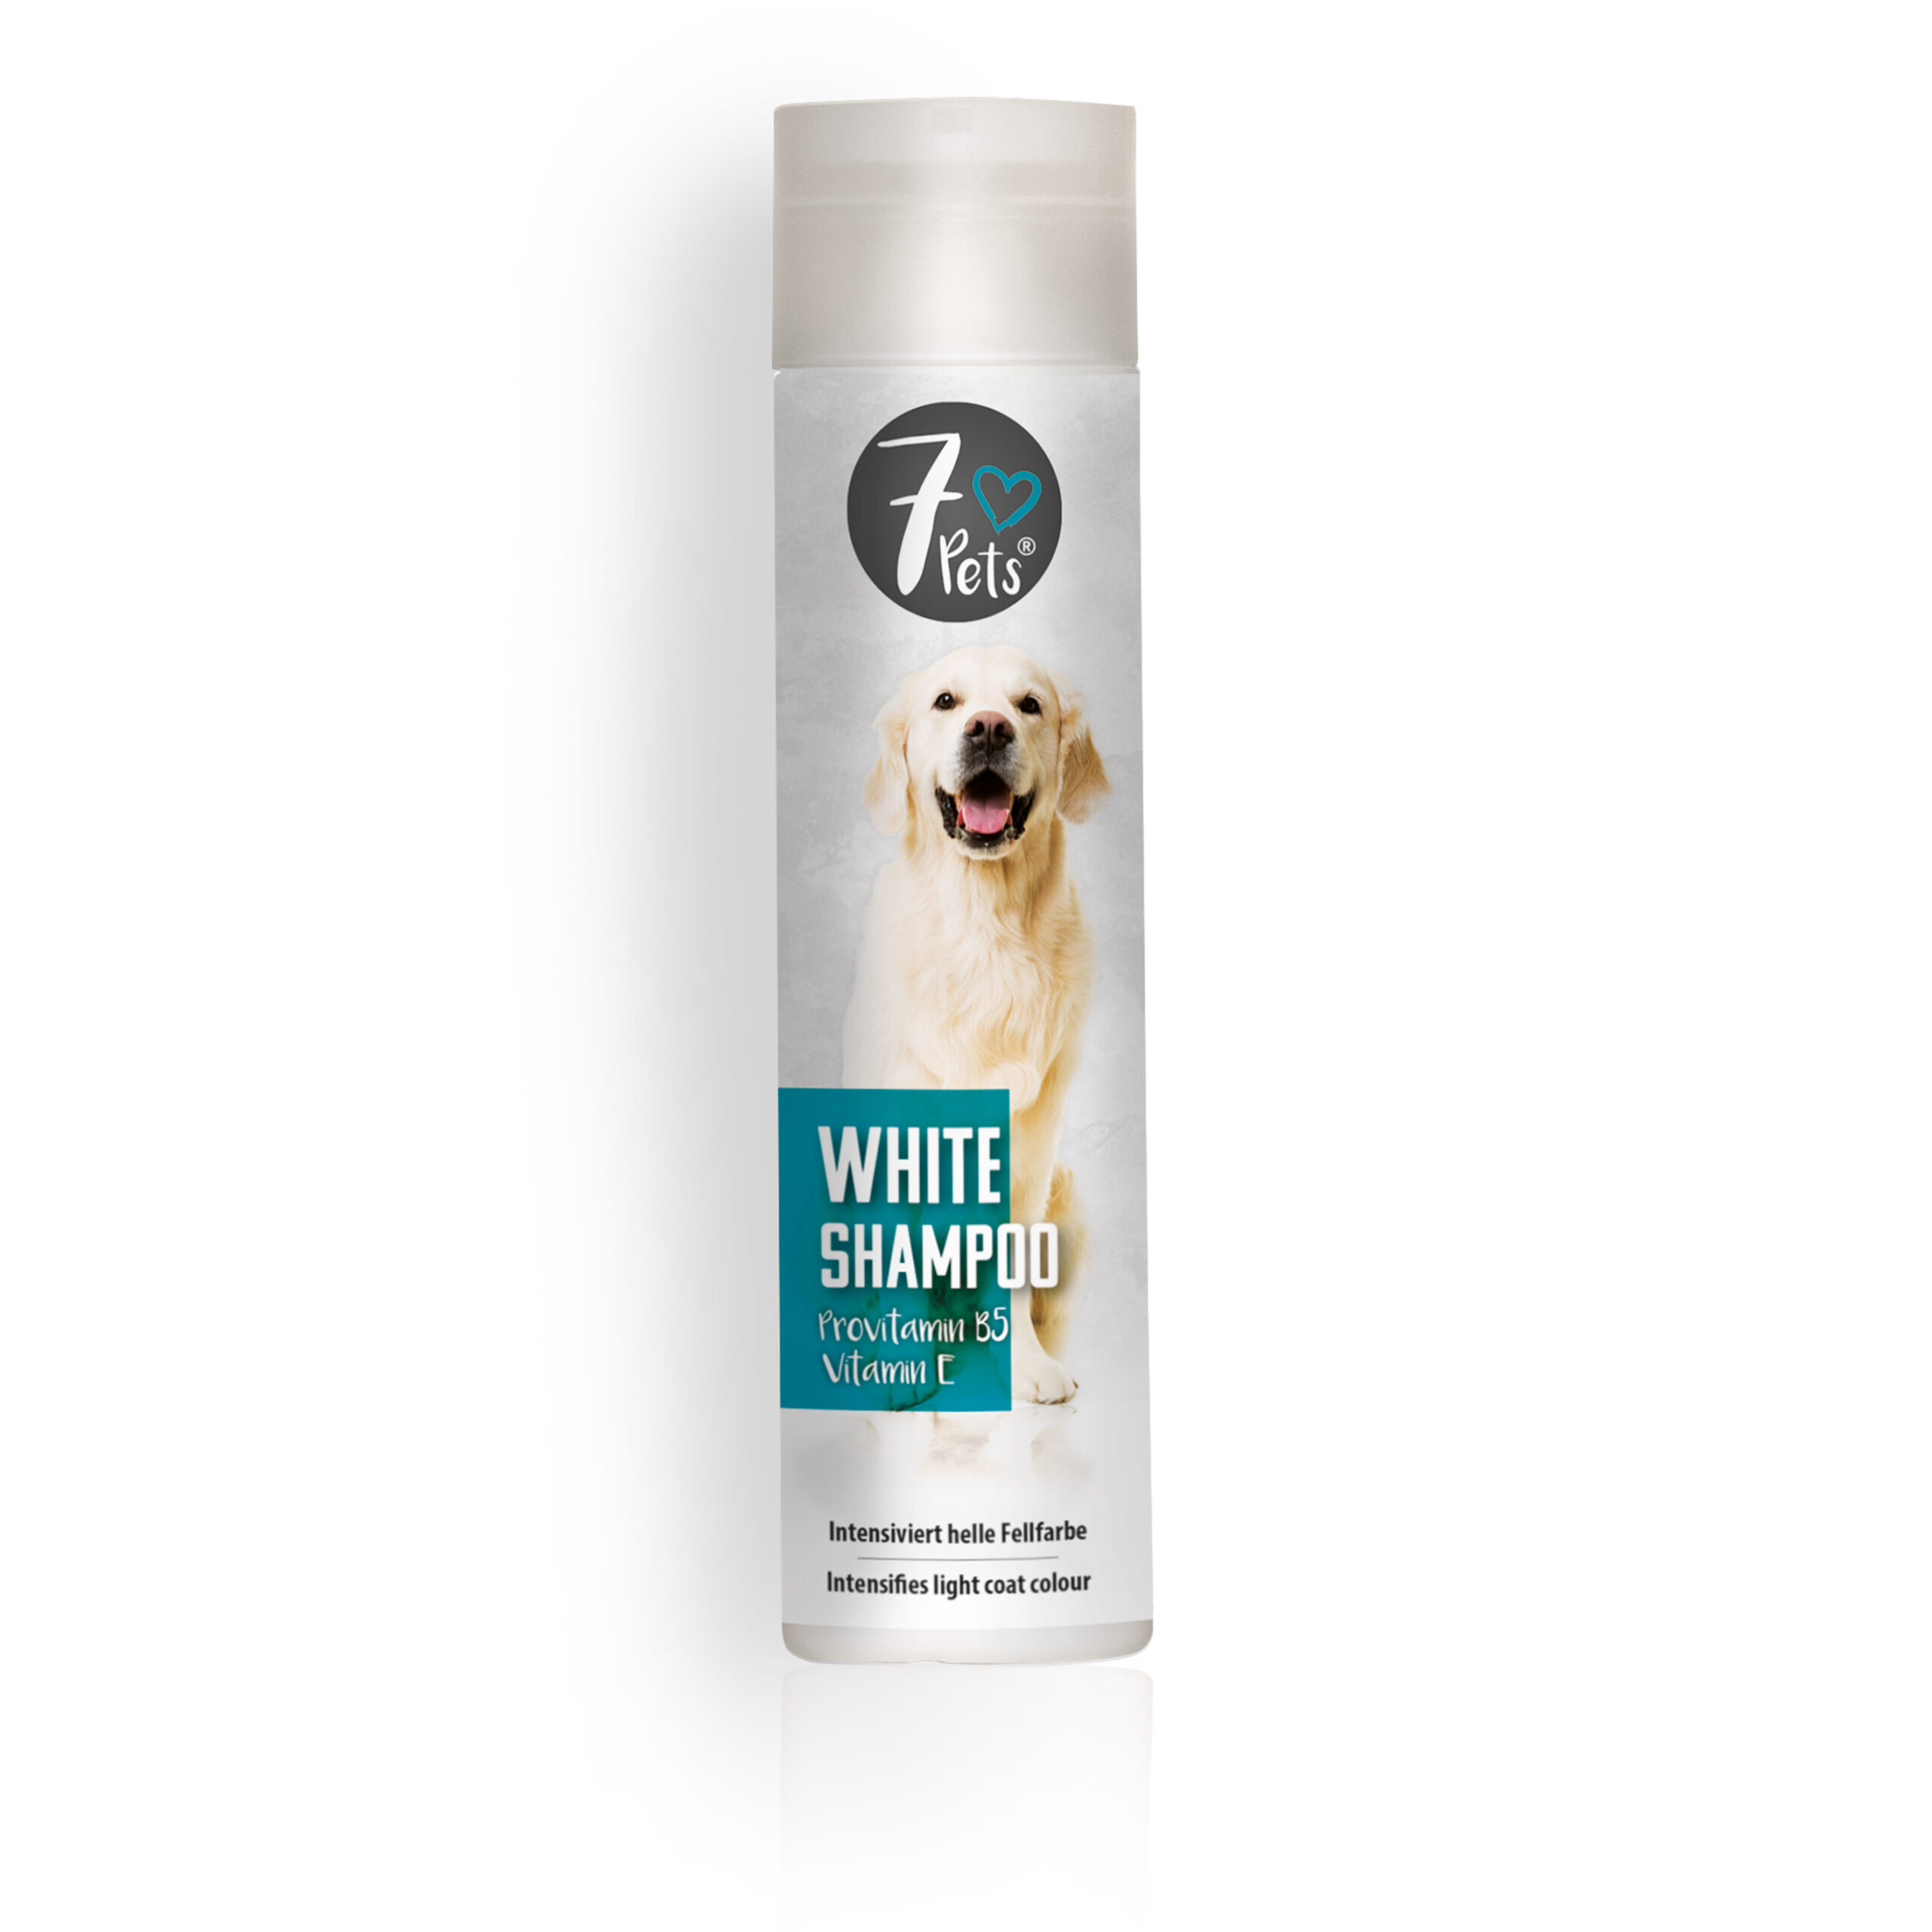 7 ♥ Pets WHITE SHAMPOO Provitamin B5-Vitamin E